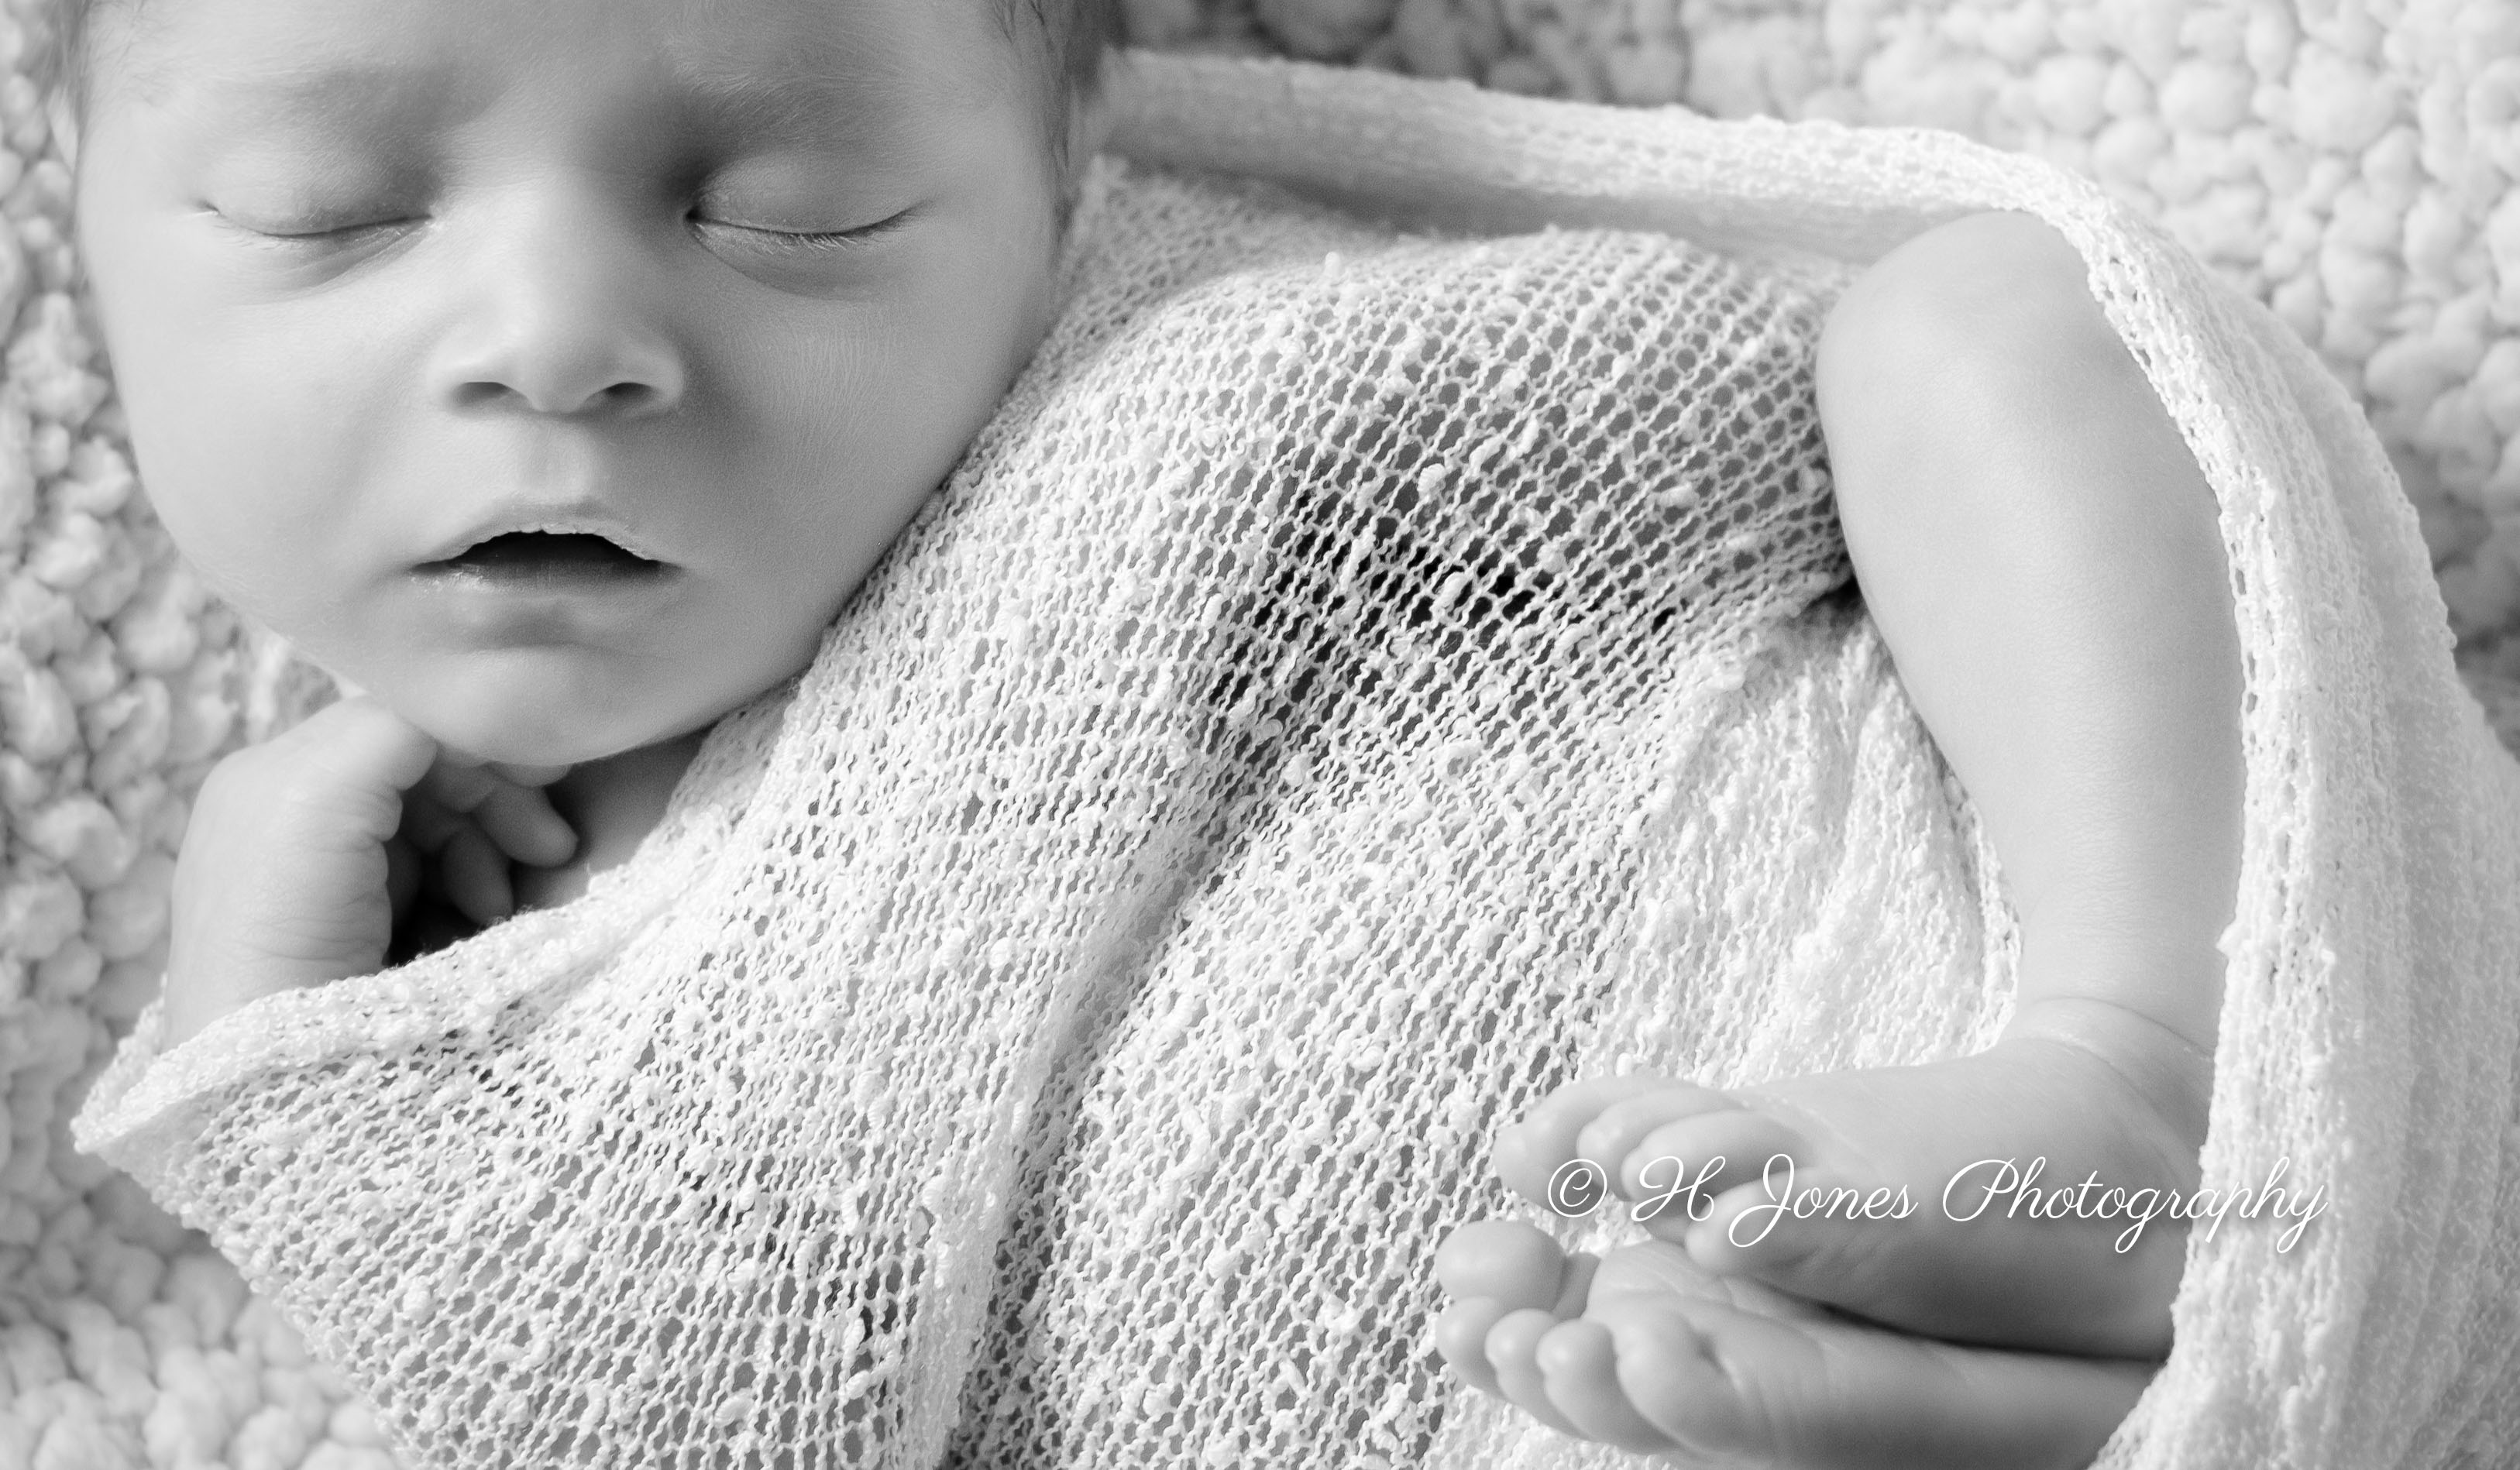 Sleeping newborn in soft blanket monochrome watermarked